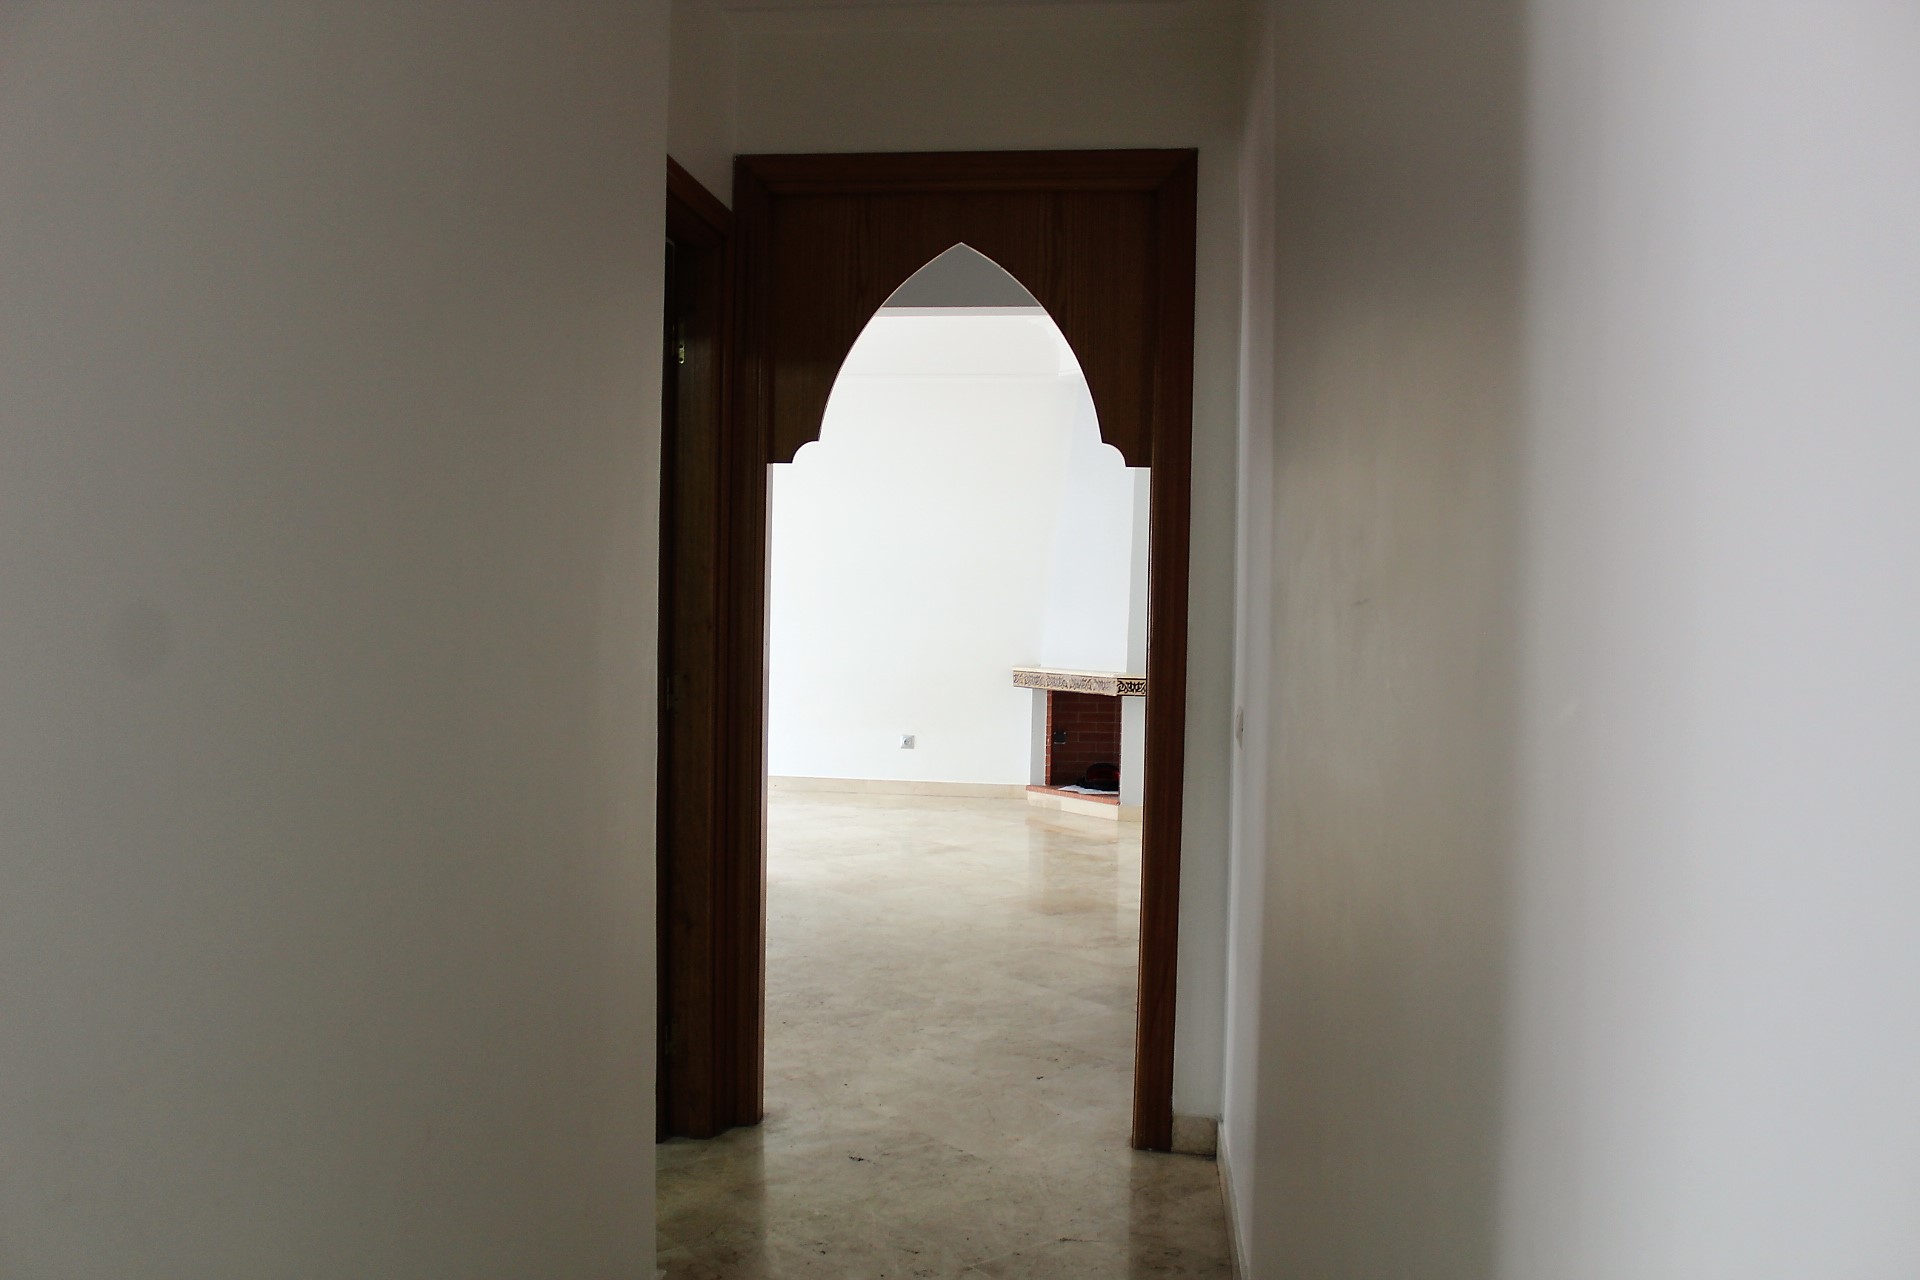 Maroc, Casablanca, Racine centre (triangle d’or), à louer agréable petit appartement meublé (70m² environ)